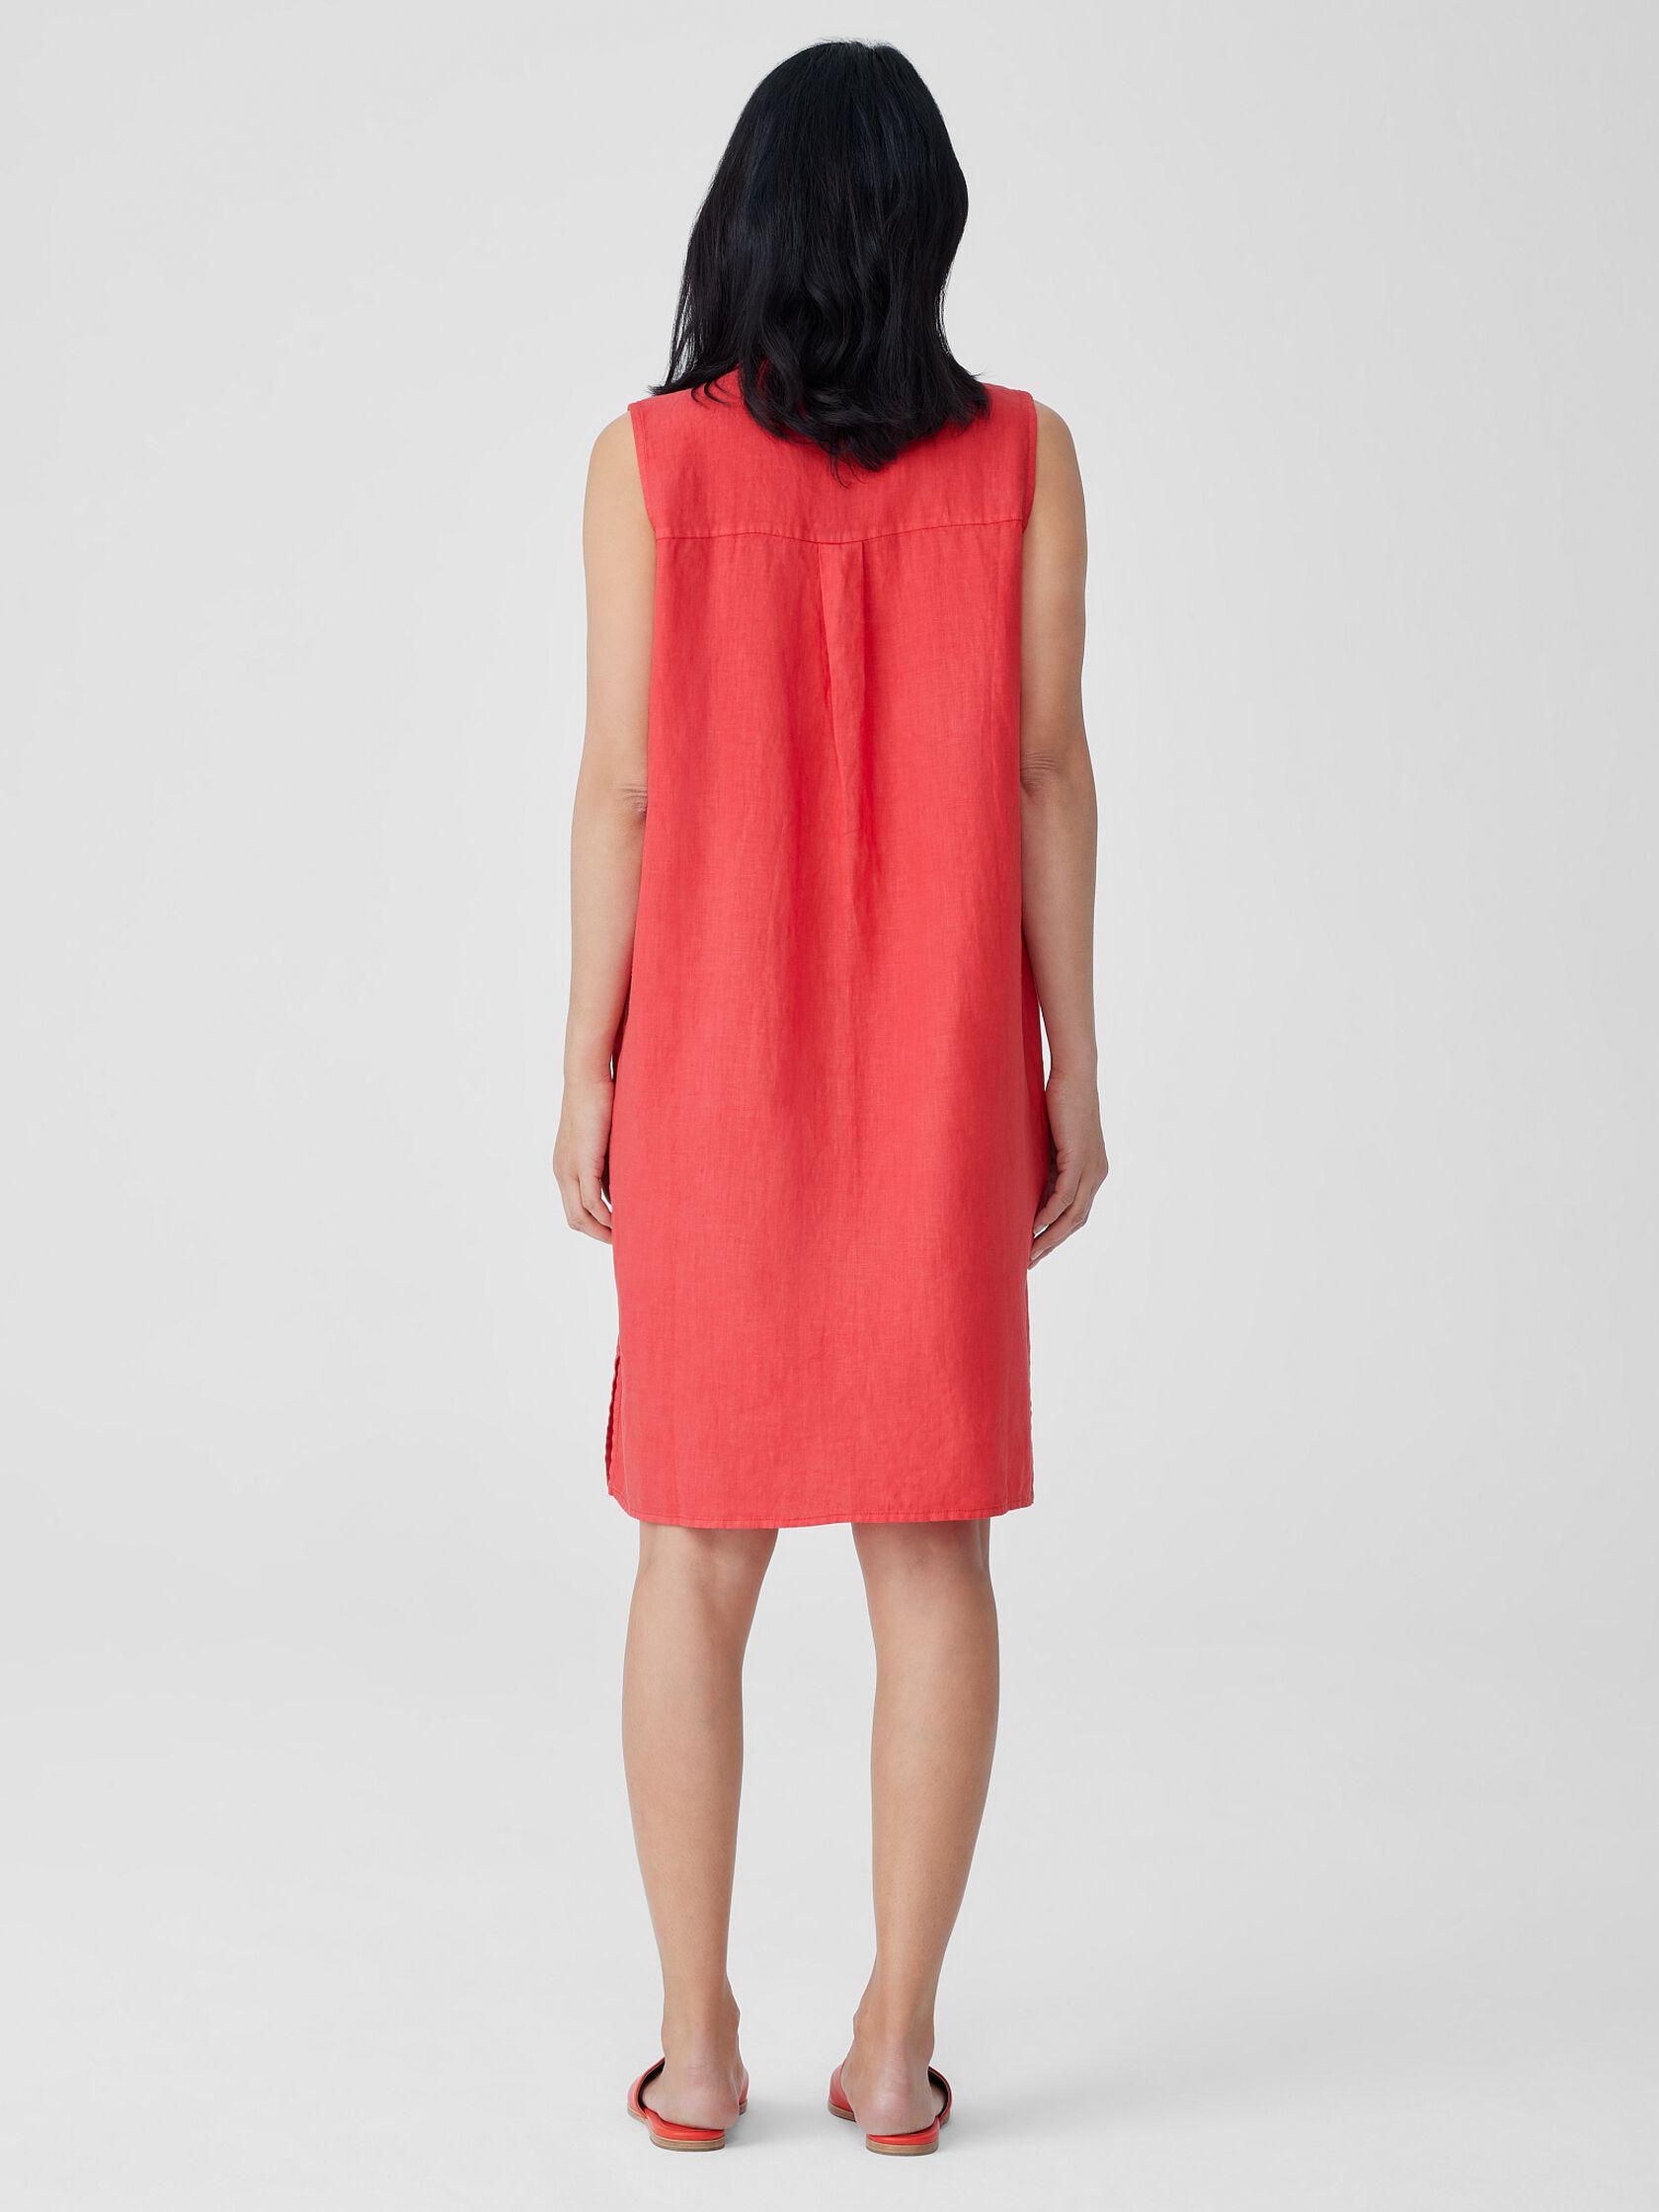 Garment-Dyed Organic Linen Classic Collar Dress